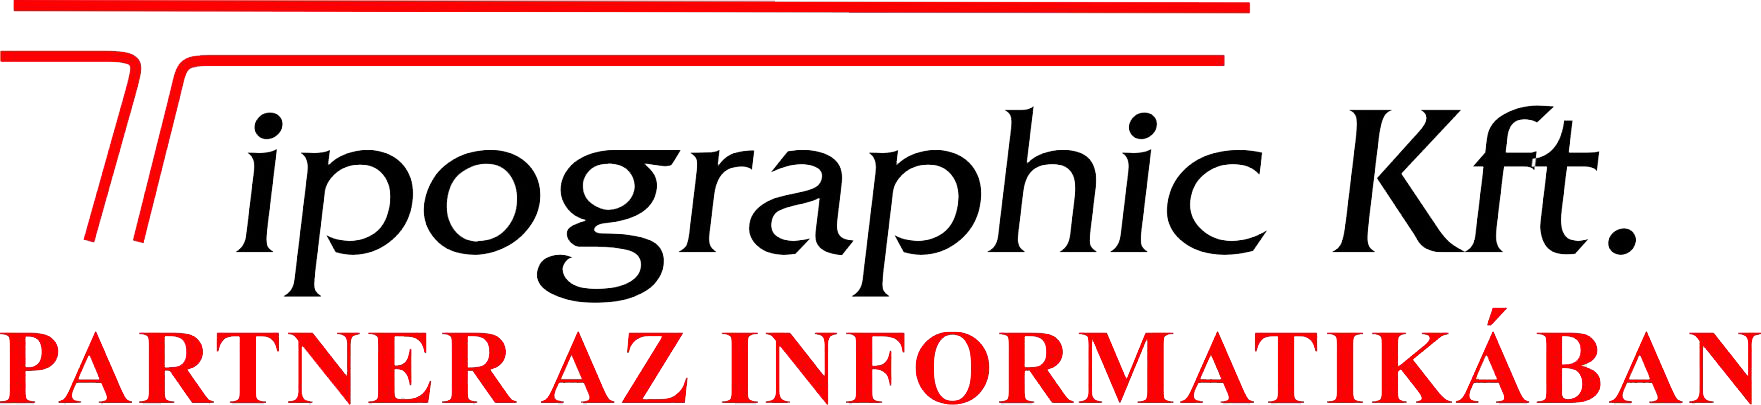 TIPOGRAPHIC Ipari, Kereskedelmi és Szolgáltató Korlátolt Felelősségü Társaság